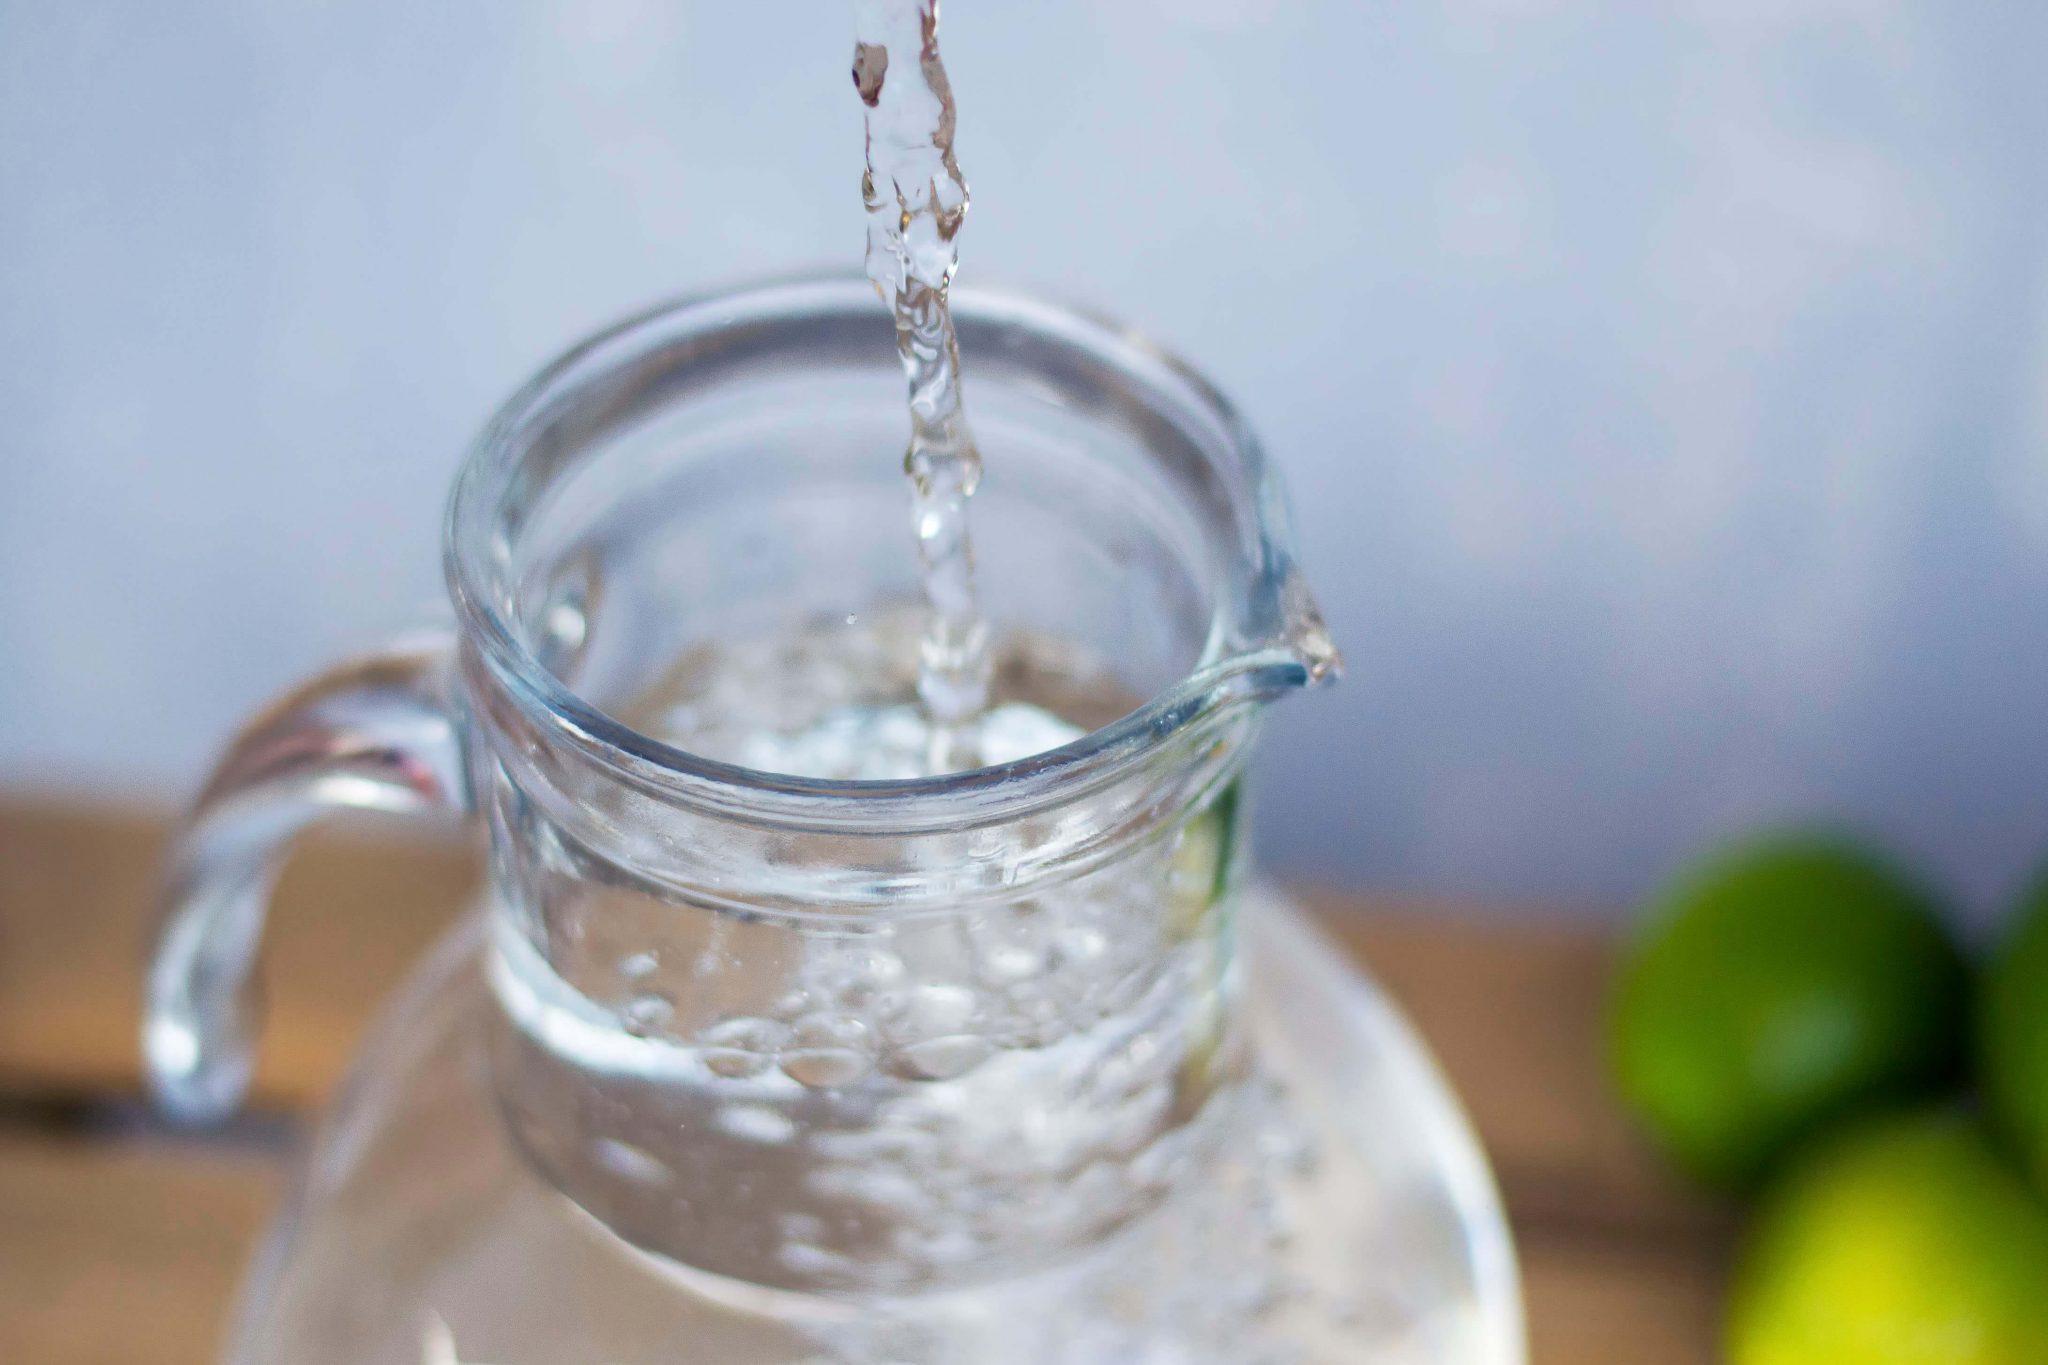 acqua aromatizzata detox acquista online fruttaweb